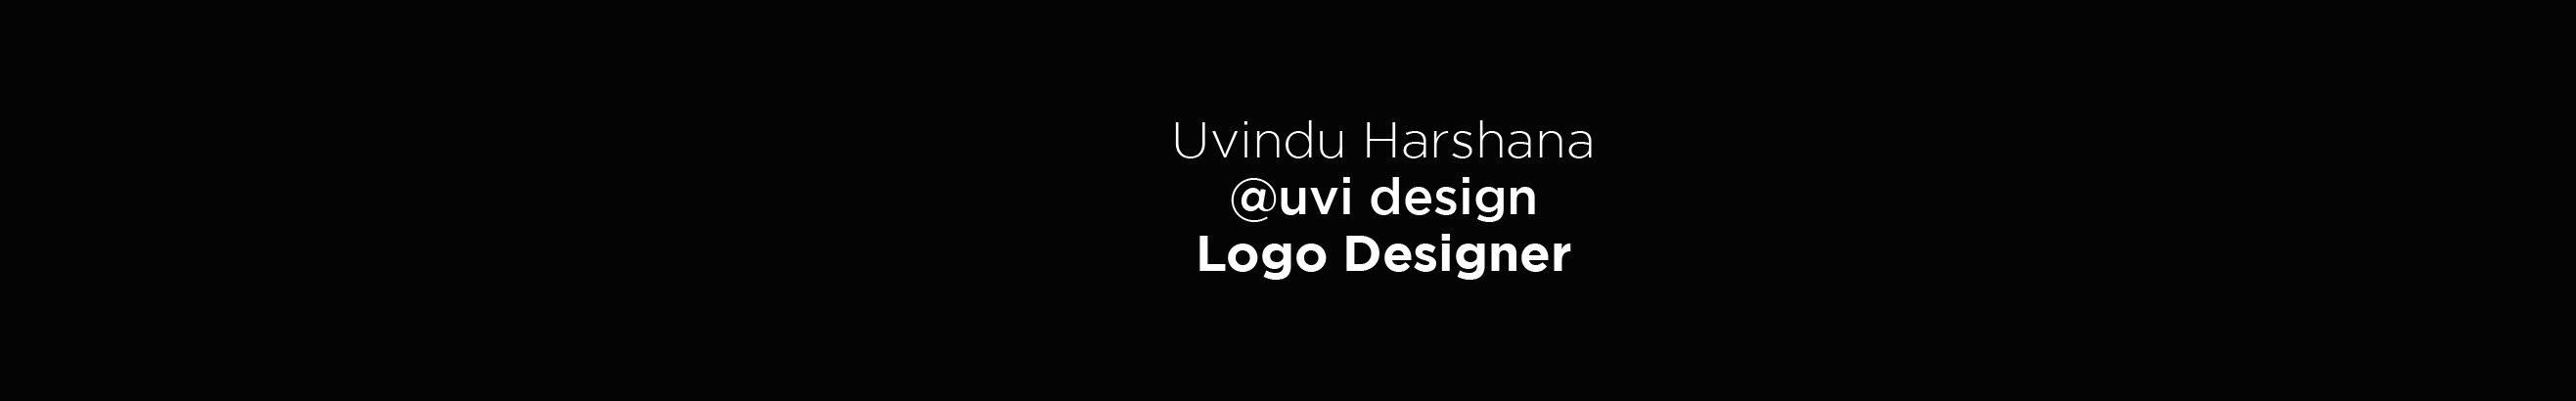 uvi design's profile banner